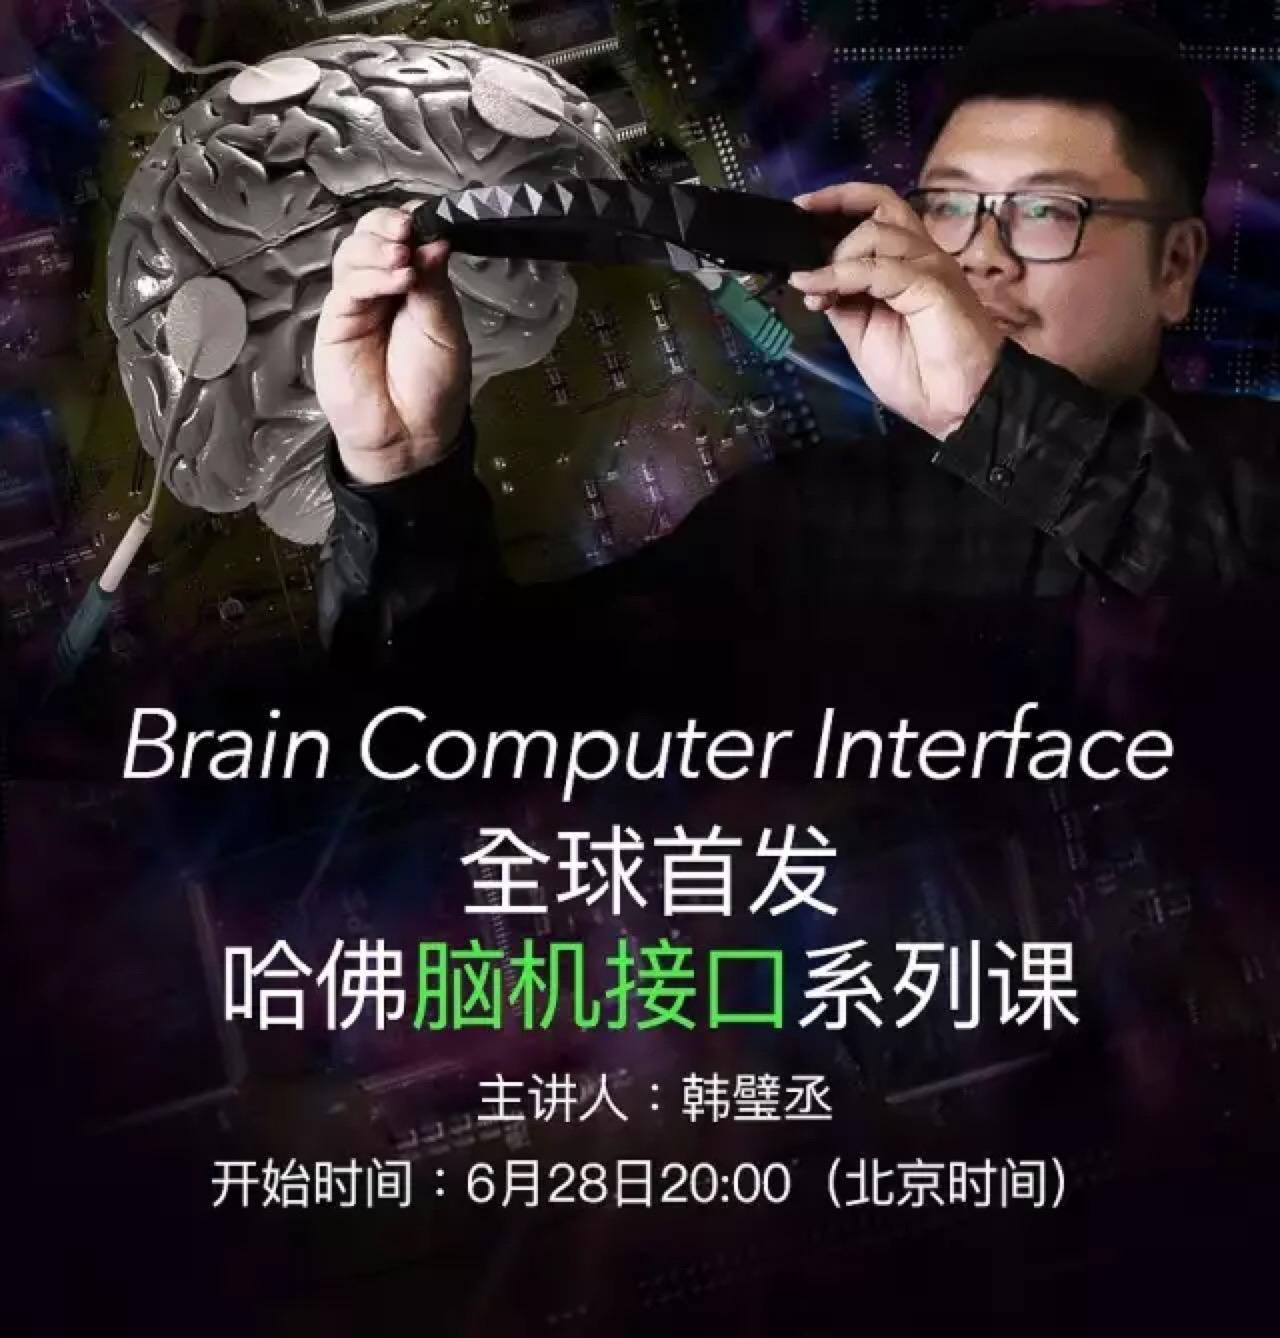 AI活动\/课程推荐:脑机接口(今晚)、聊天机器人、